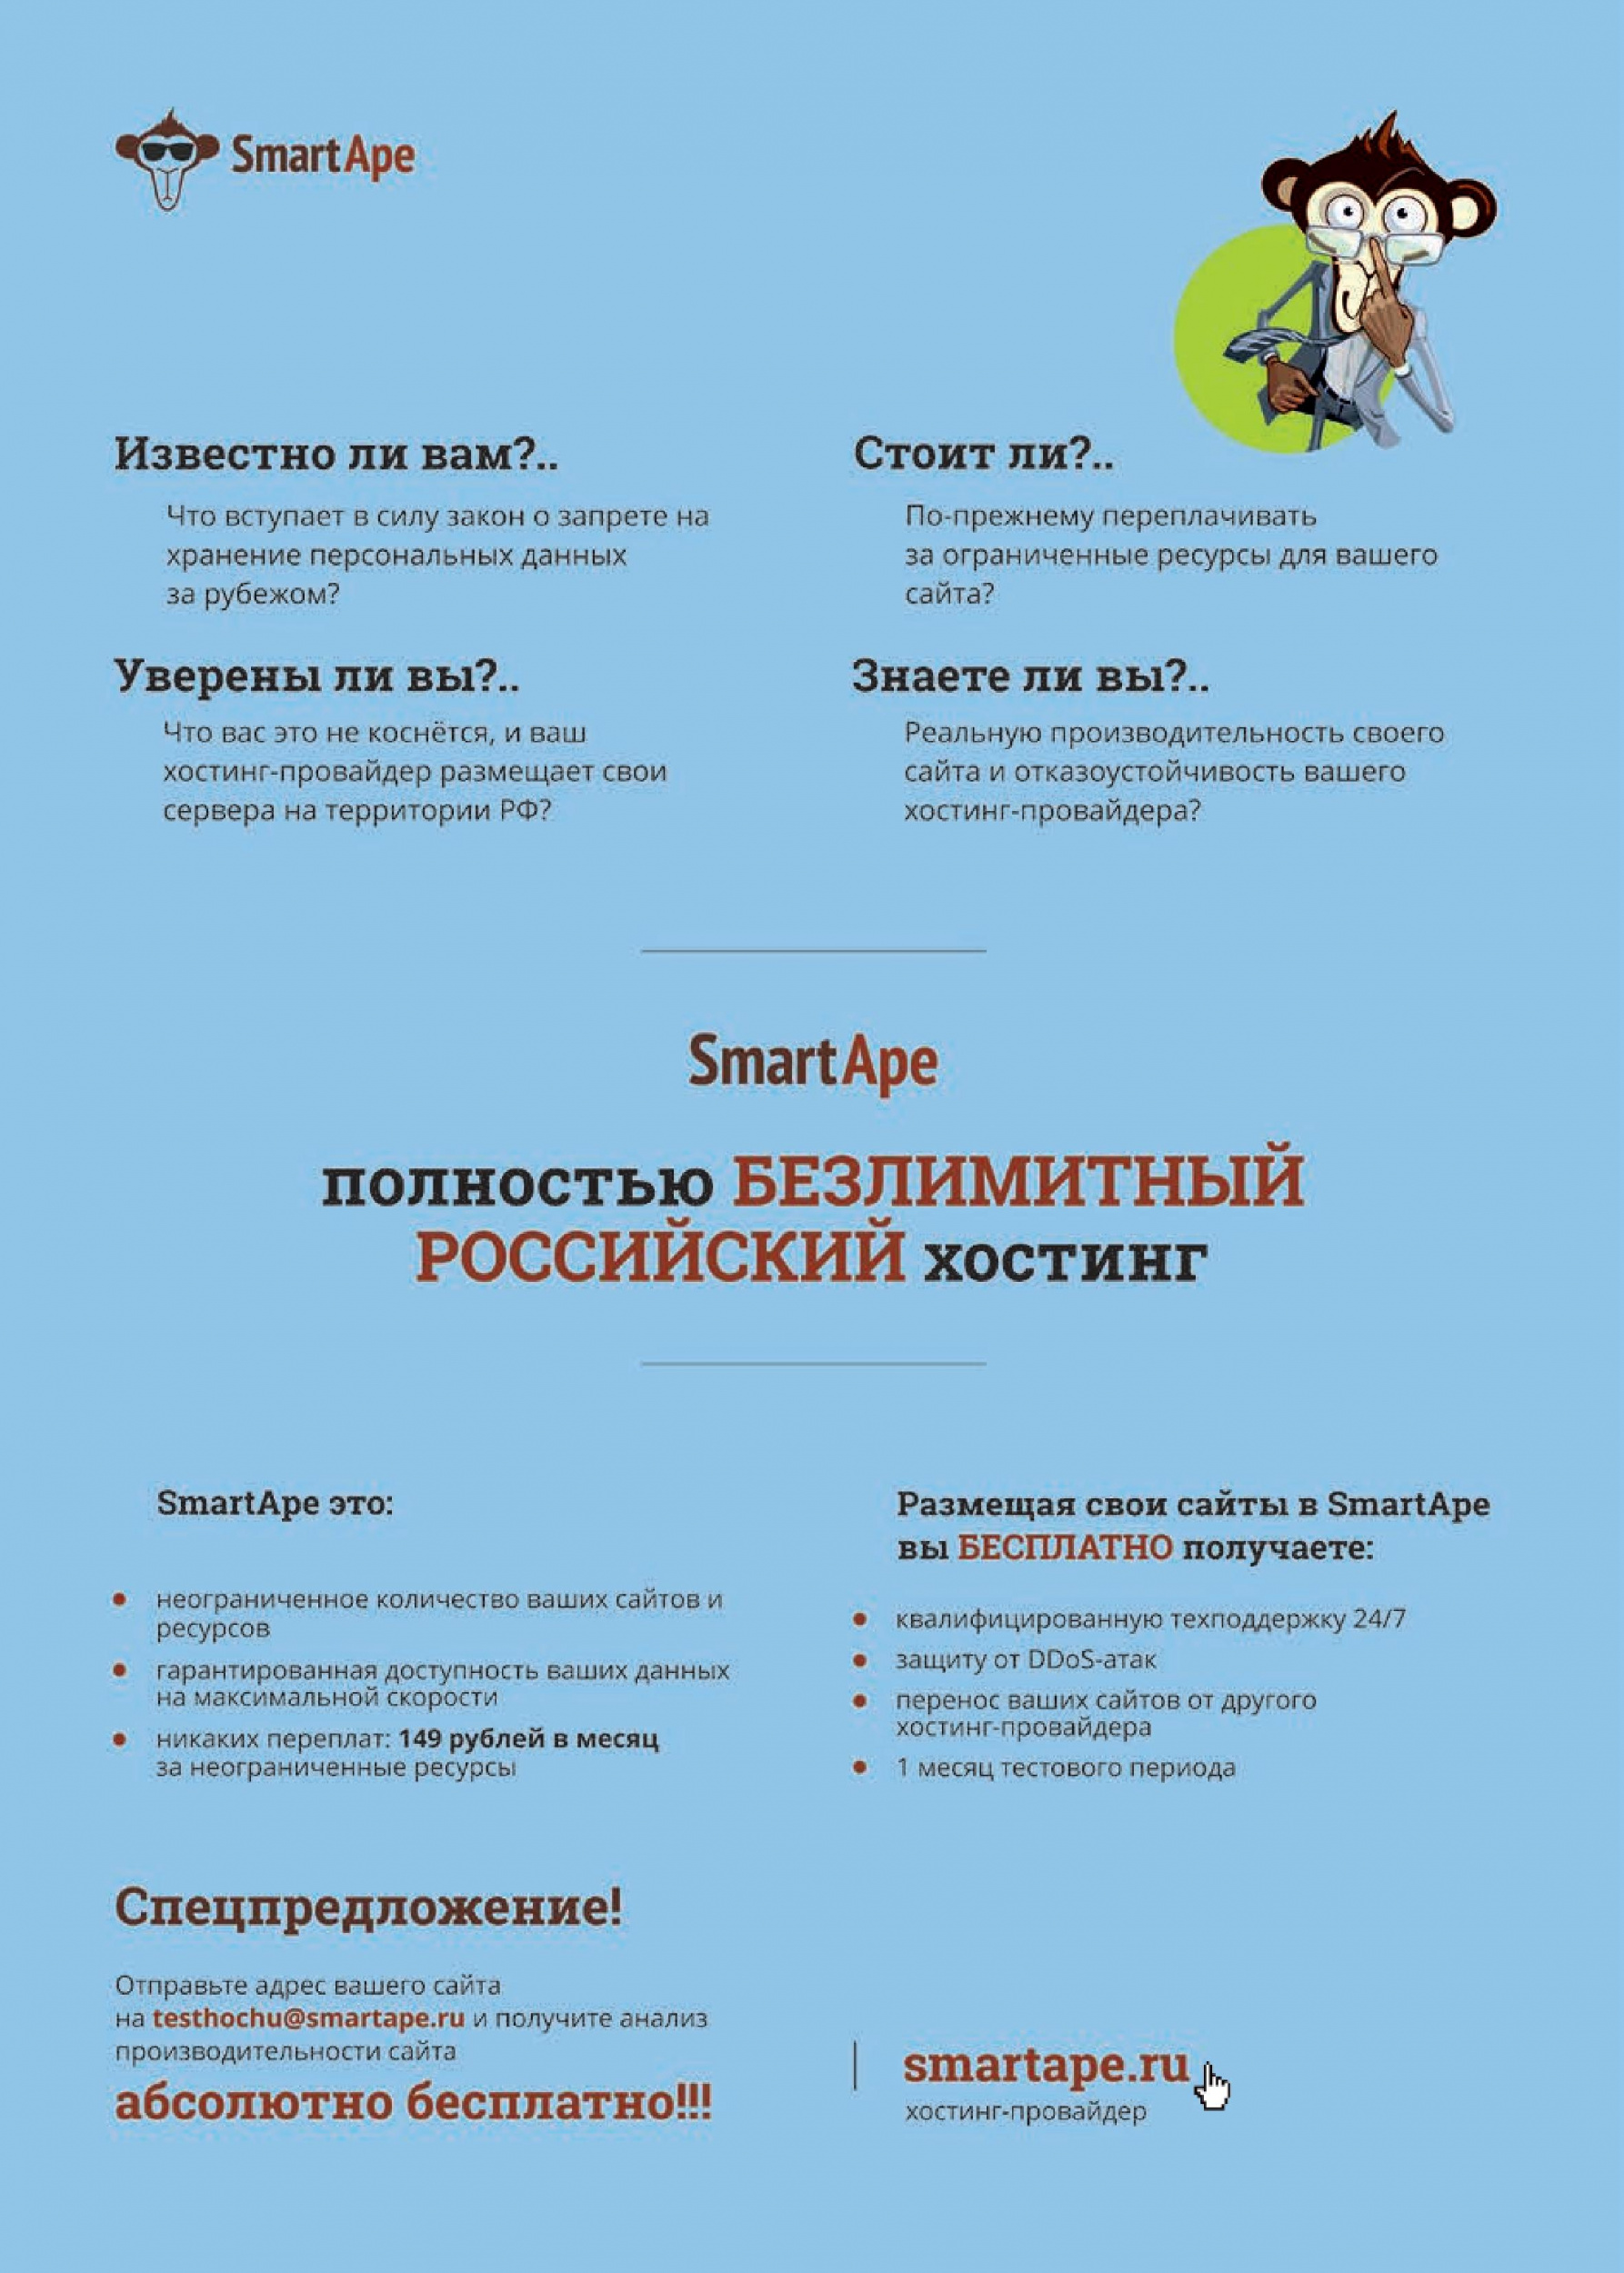 SmartApe - полностью безлимитный российский хостинг